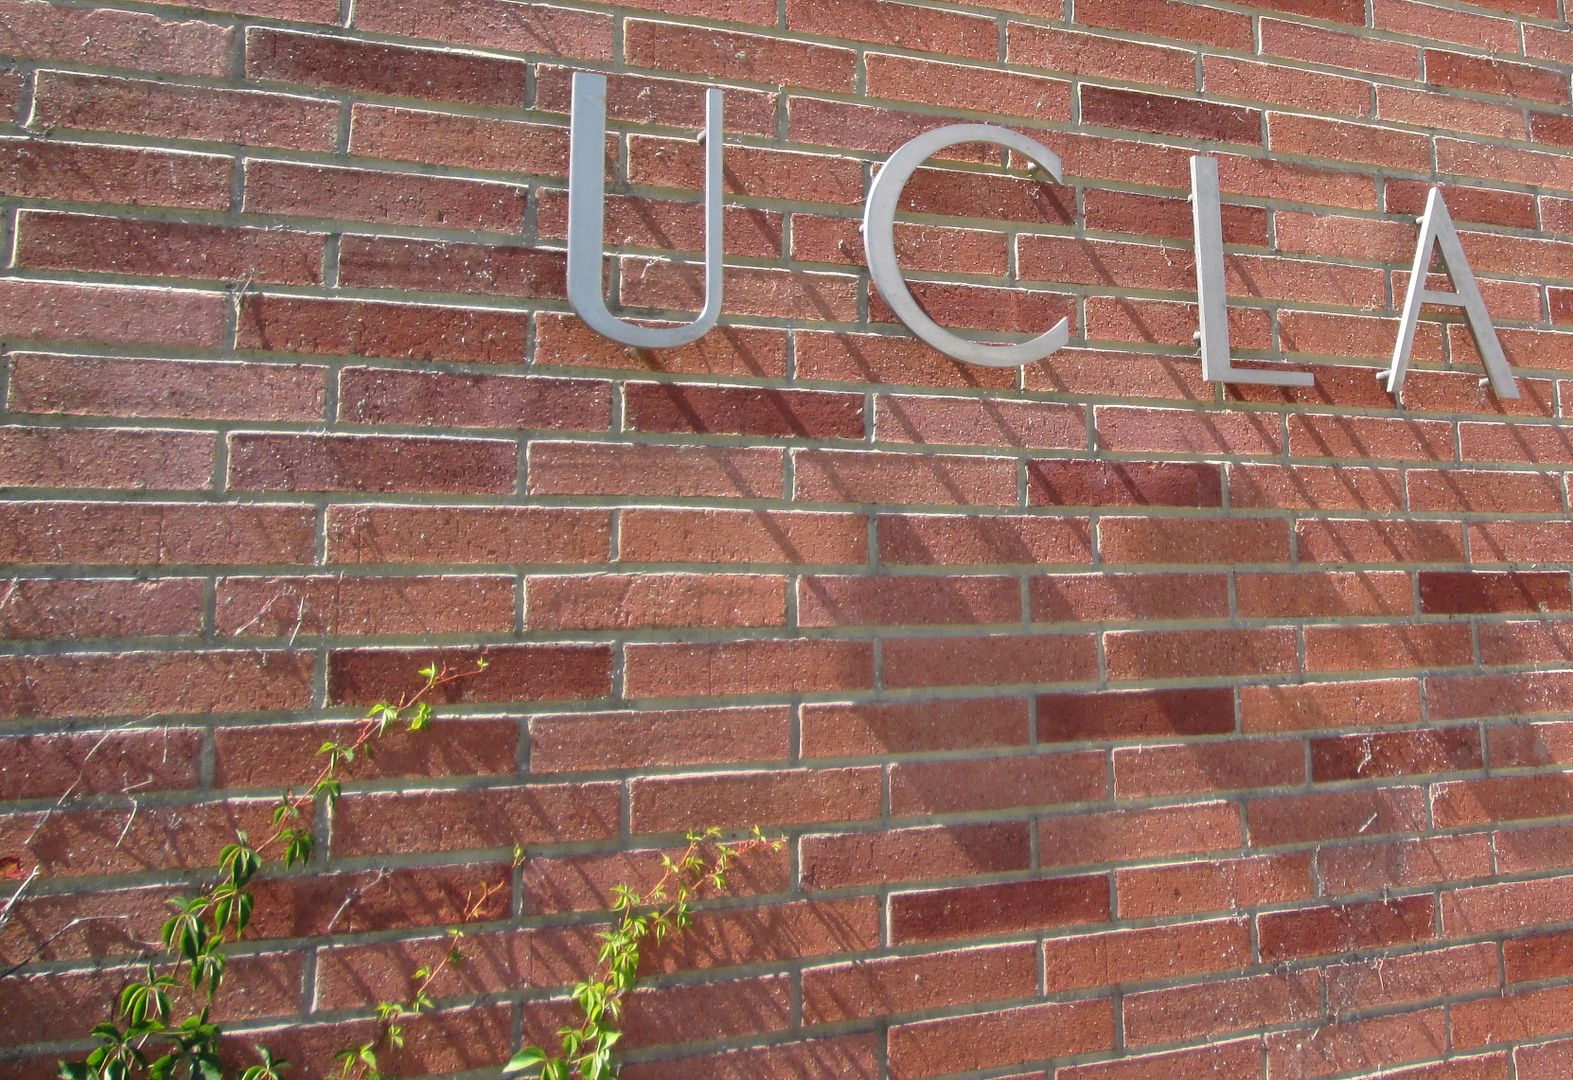 UCLA west campus